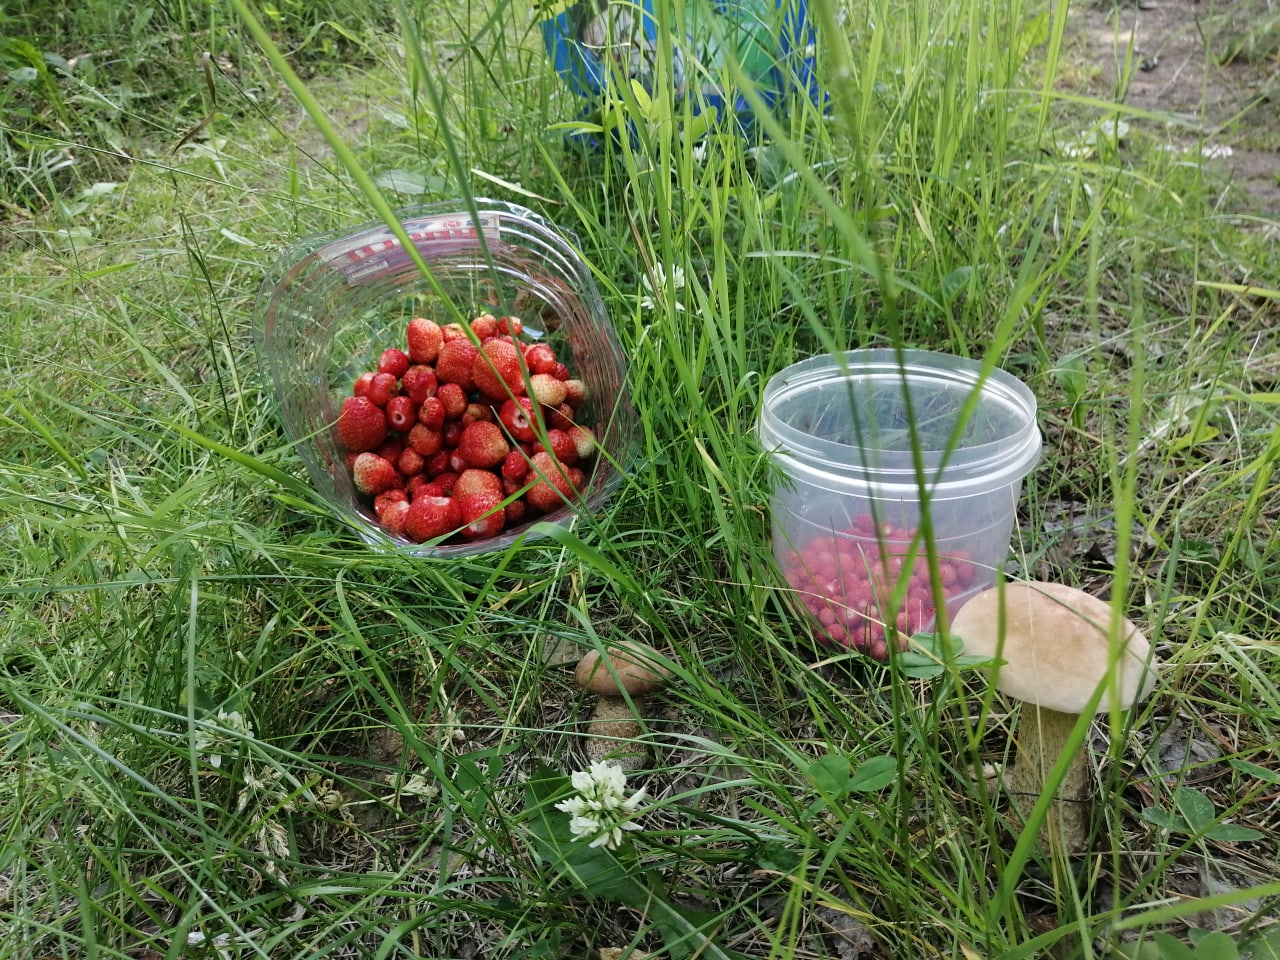 Земляника — направо, подберезовики — налево: куда ехать за грибами и ягодами на Урале в выходные